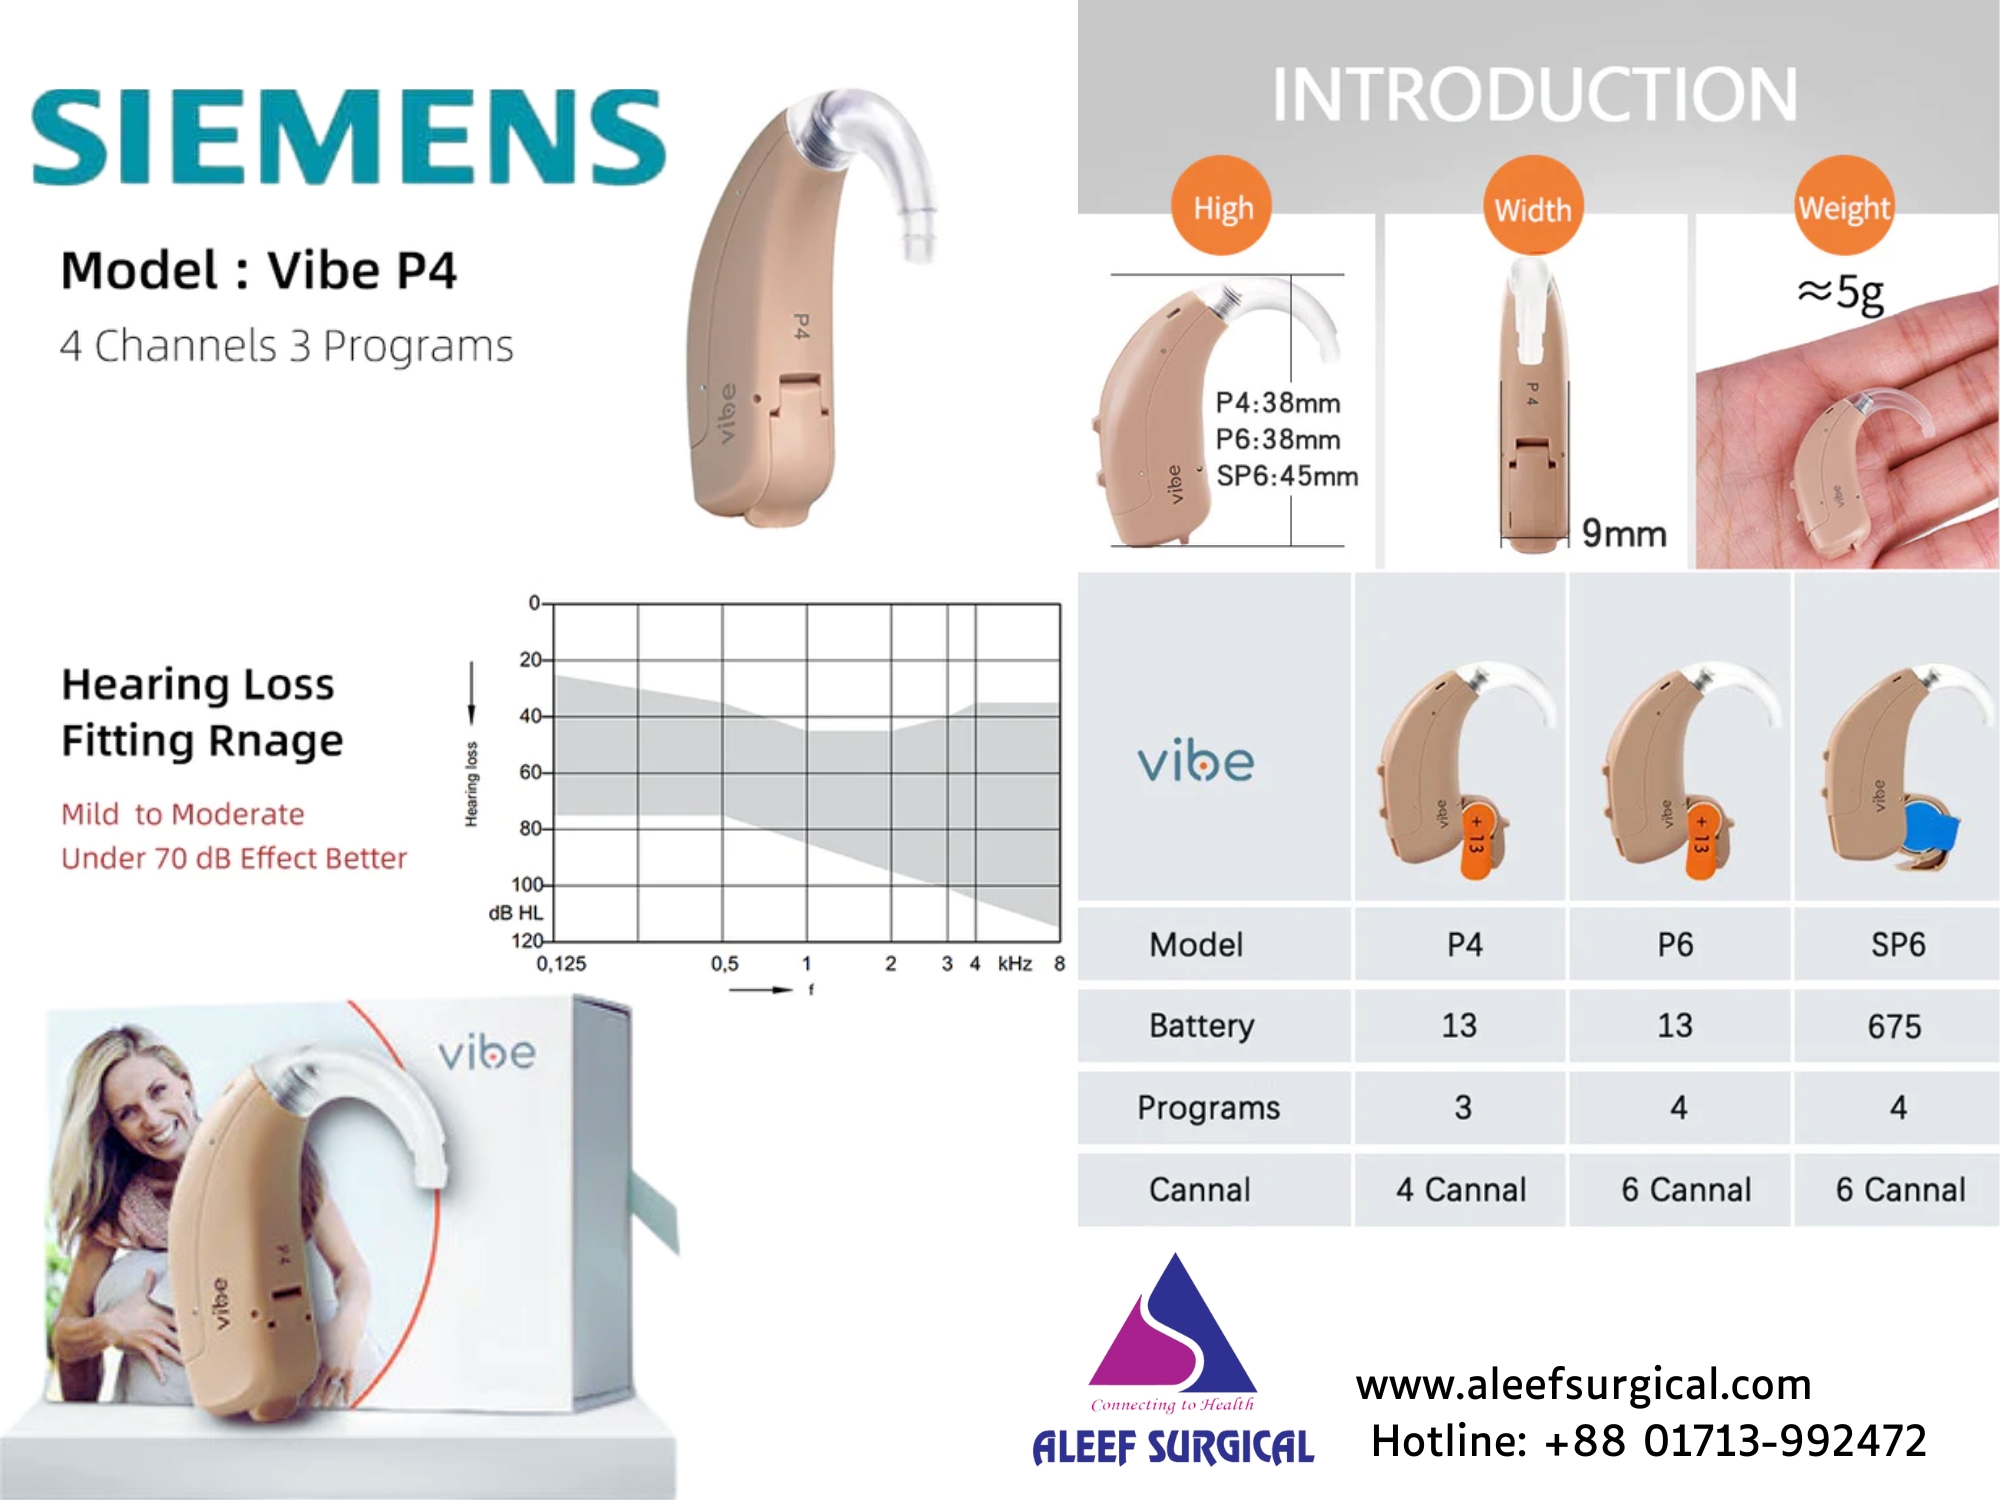 Siemens Vibe P4 Digital Hearing Aid Price in BD. Image